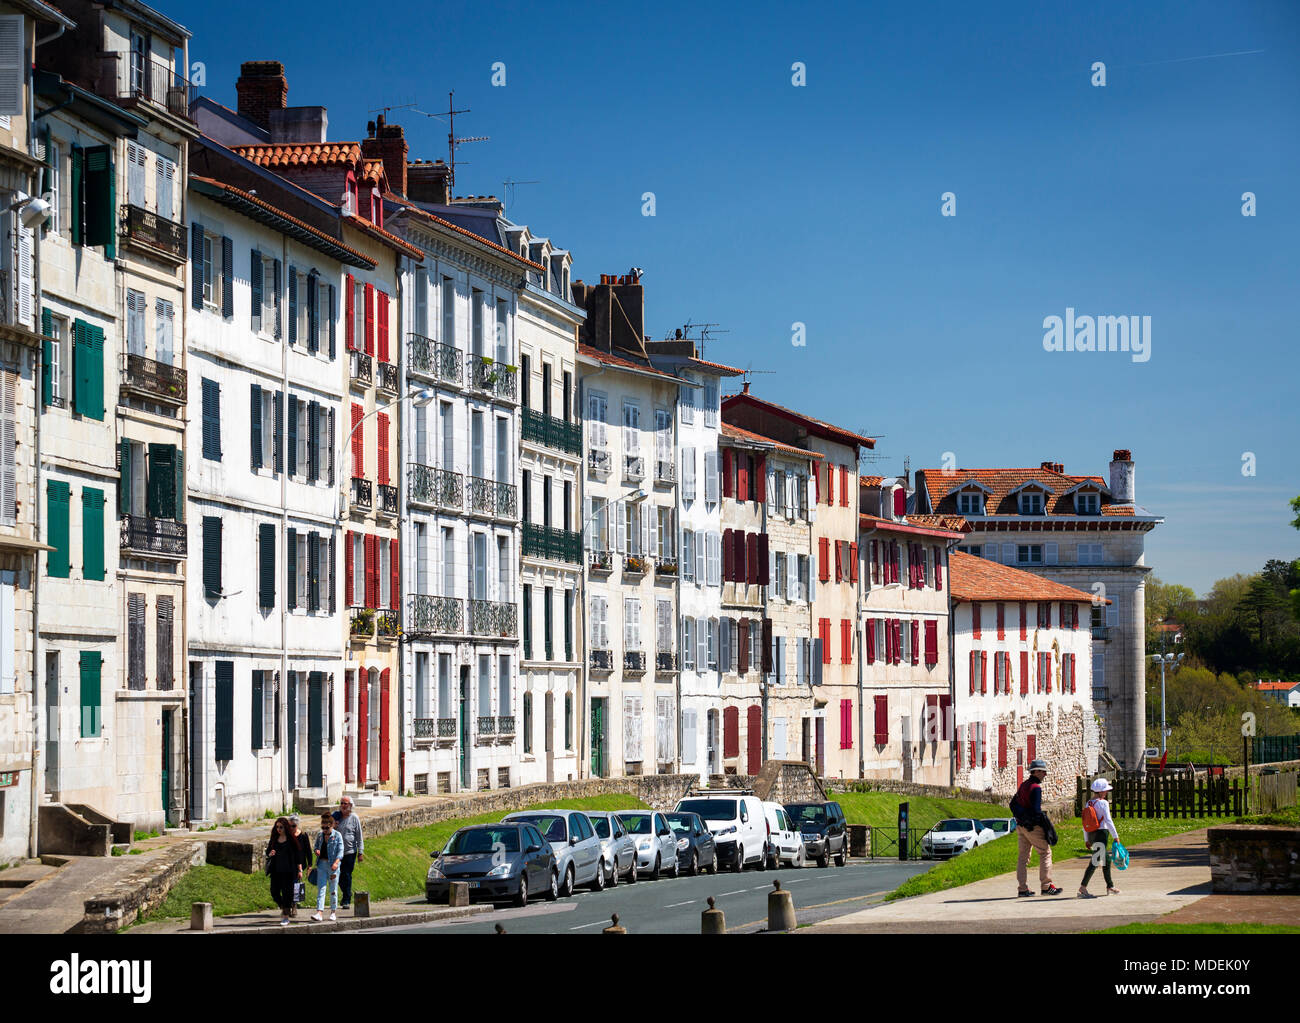 Maisons de plain-pied typique du quartier Grand Bayonne (Bayonne rue Pyrénées Atlantiques Aquitaine France). Maisons à étages typiques du Grand Bayonne. Banque D'Images